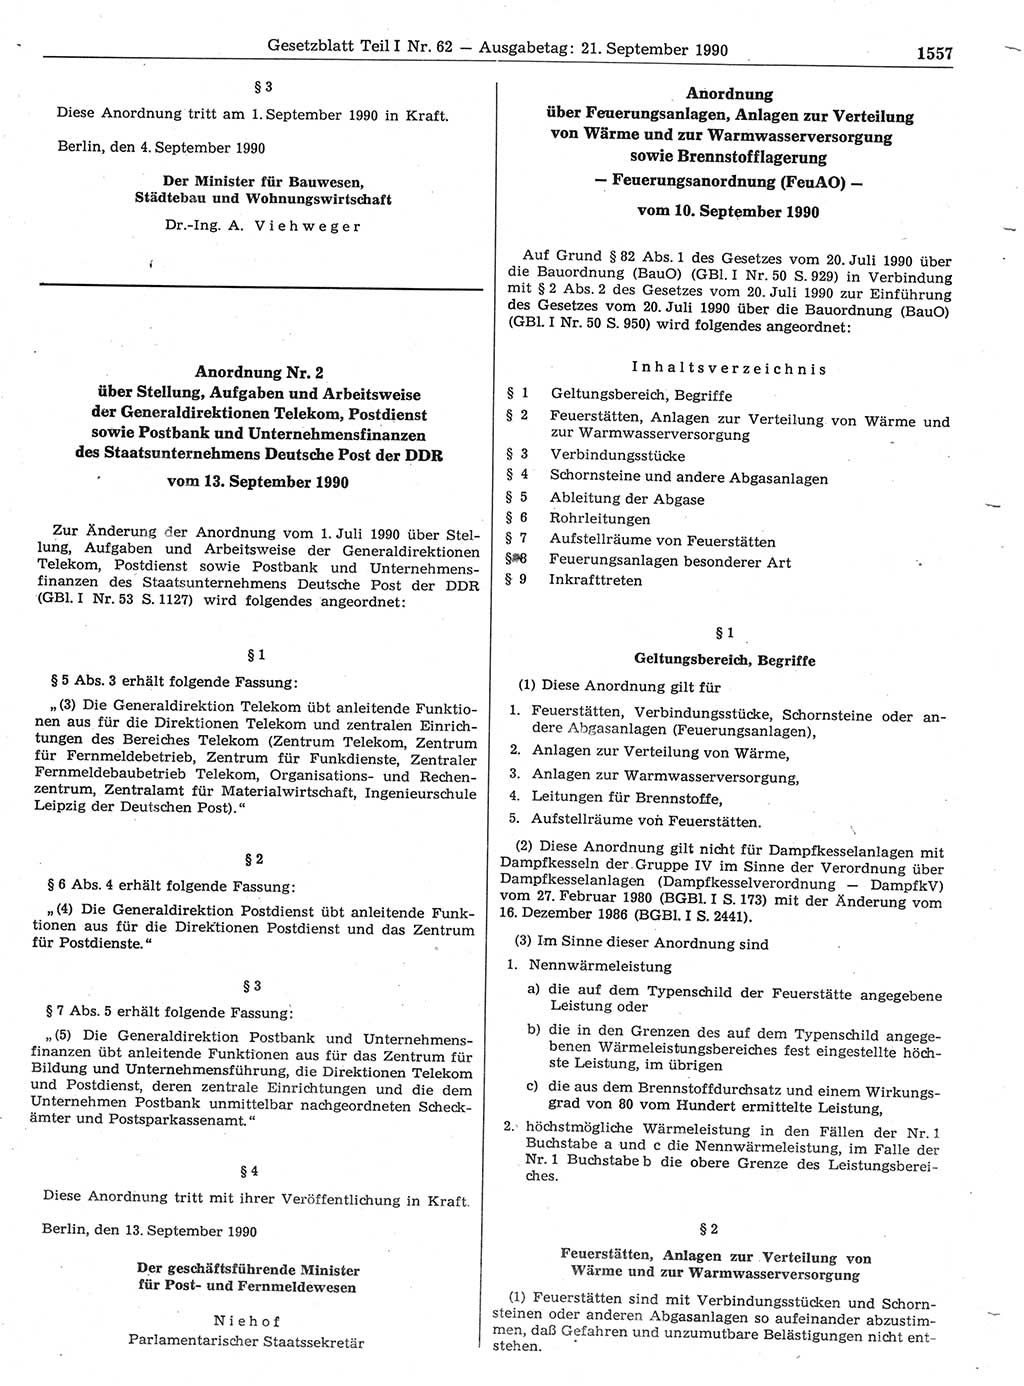 Gesetzblatt (GBl.) der Deutschen Demokratischen Republik (DDR) Teil Ⅰ 1990, Seite 1557 (GBl. DDR Ⅰ 1990, S. 1557)